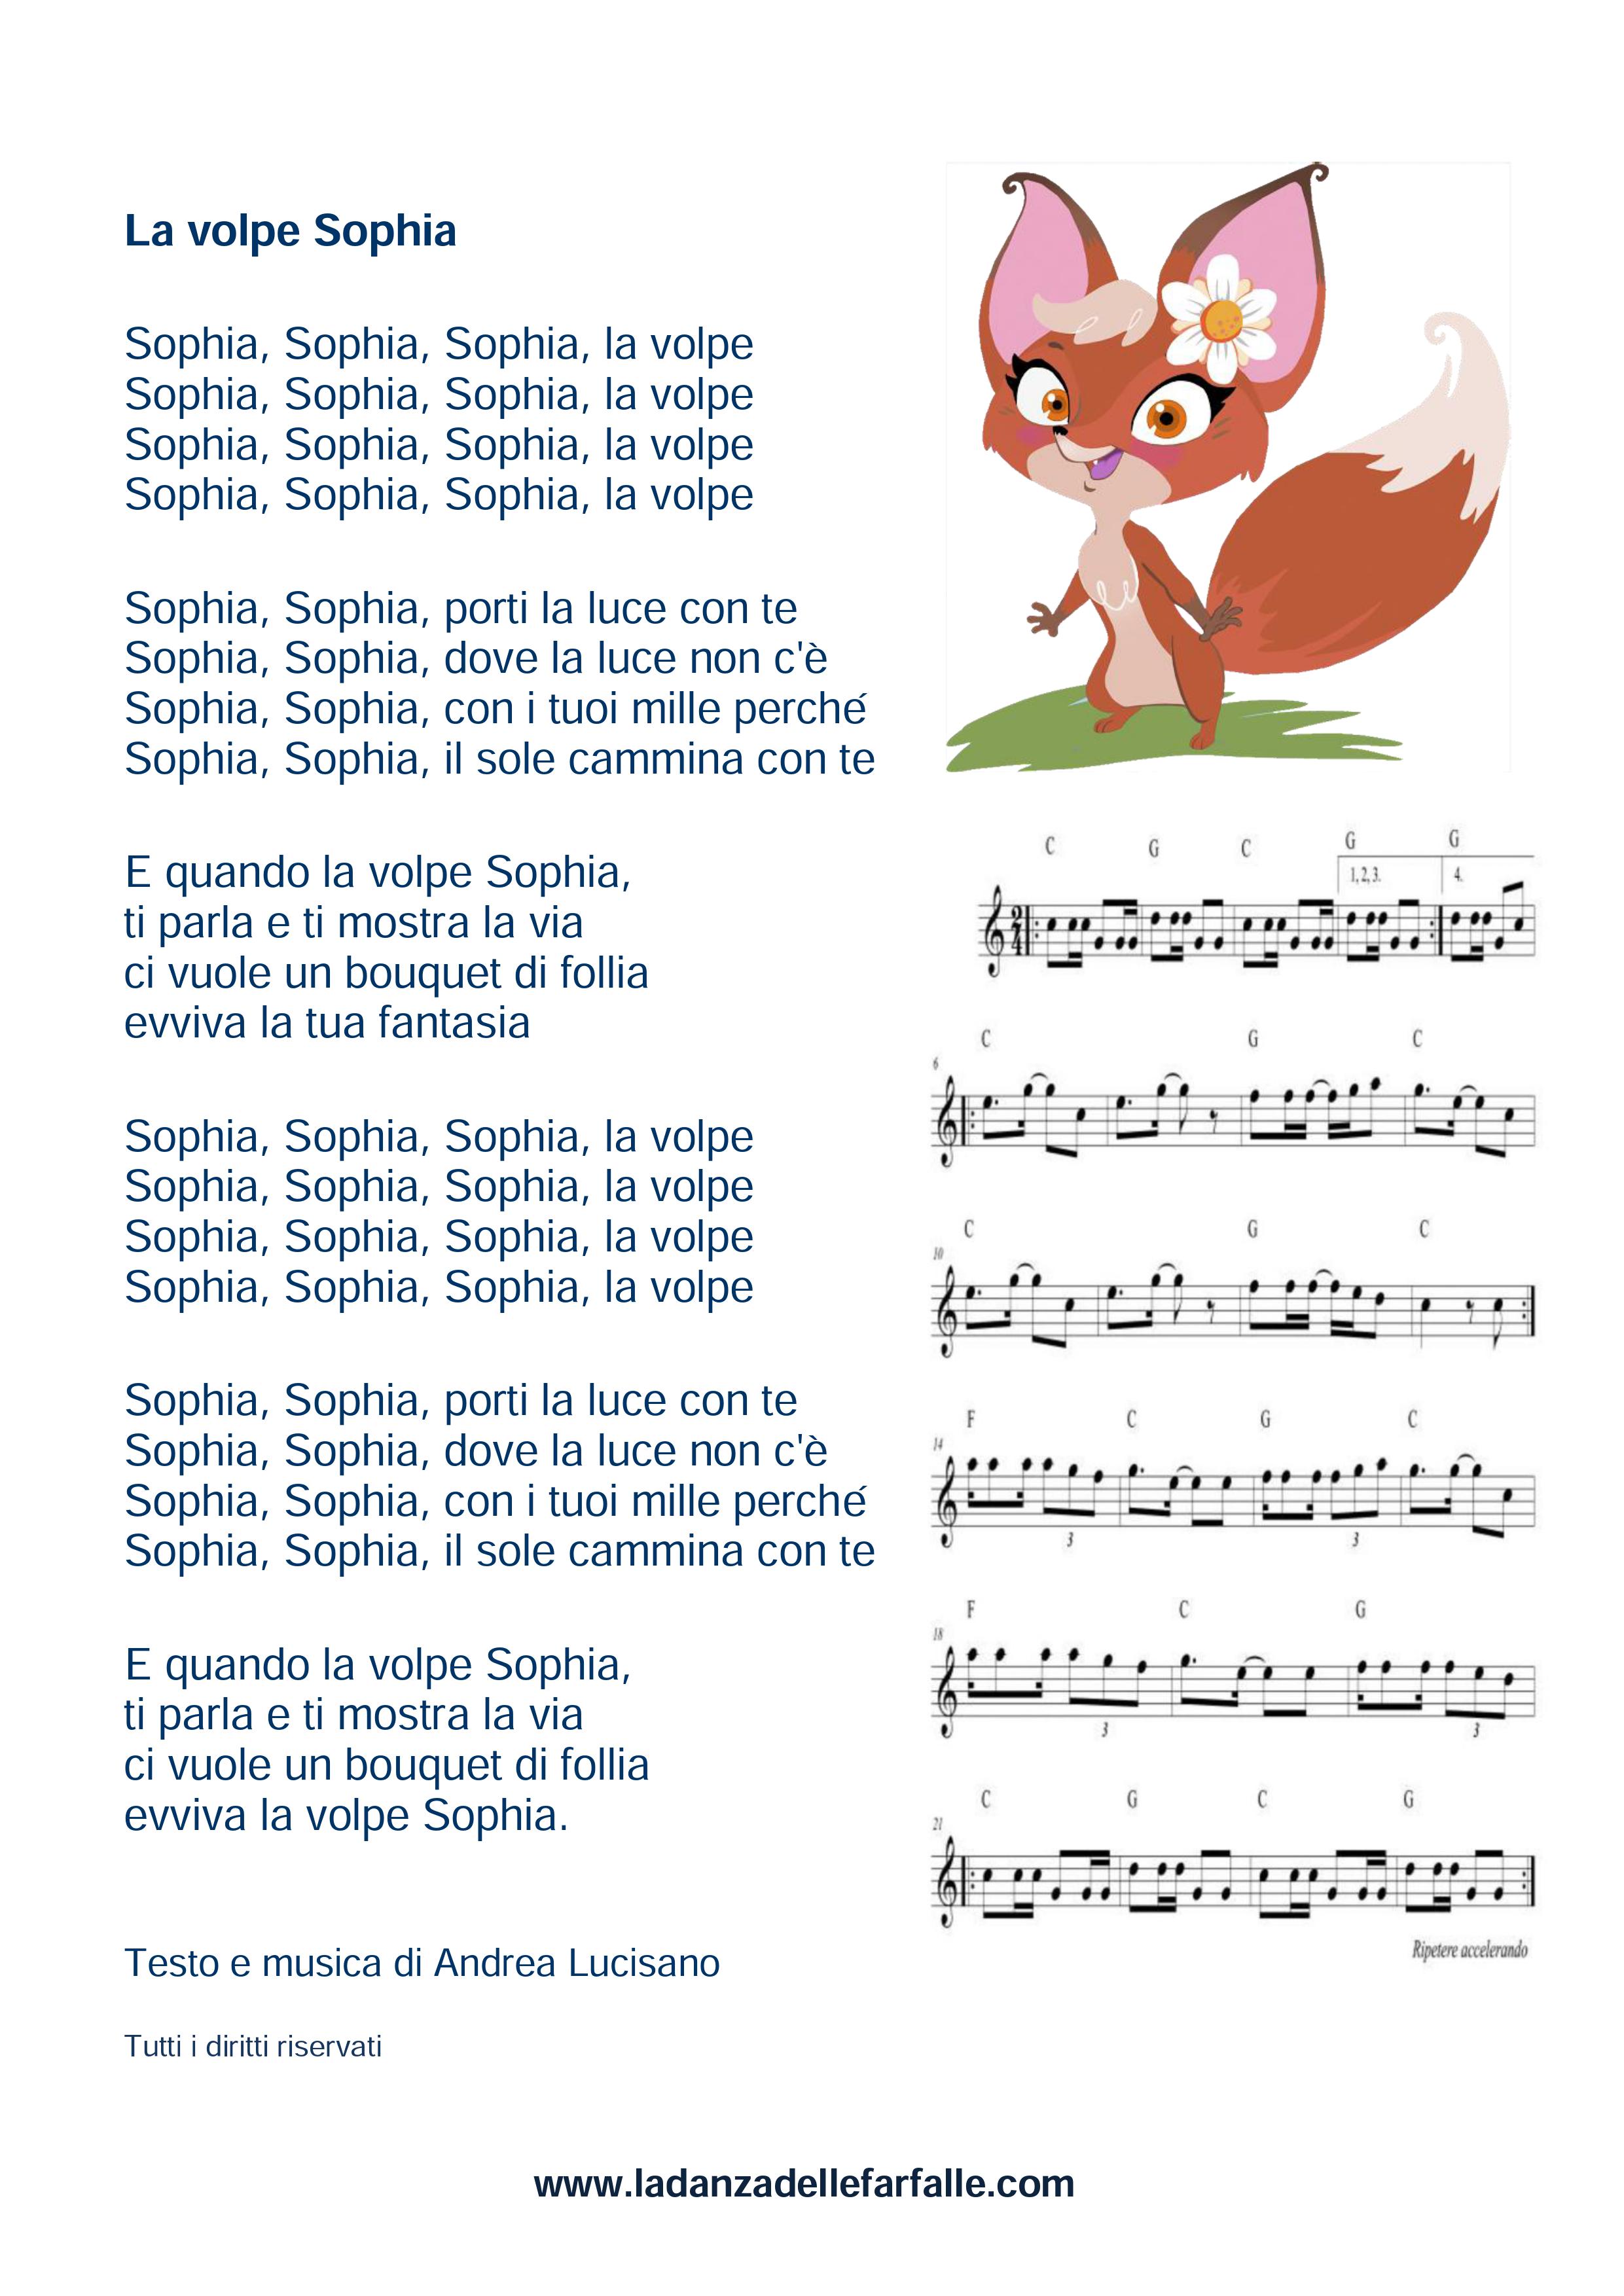 La volpe Sophia di Andrea Lucisano testo canzone con spartito